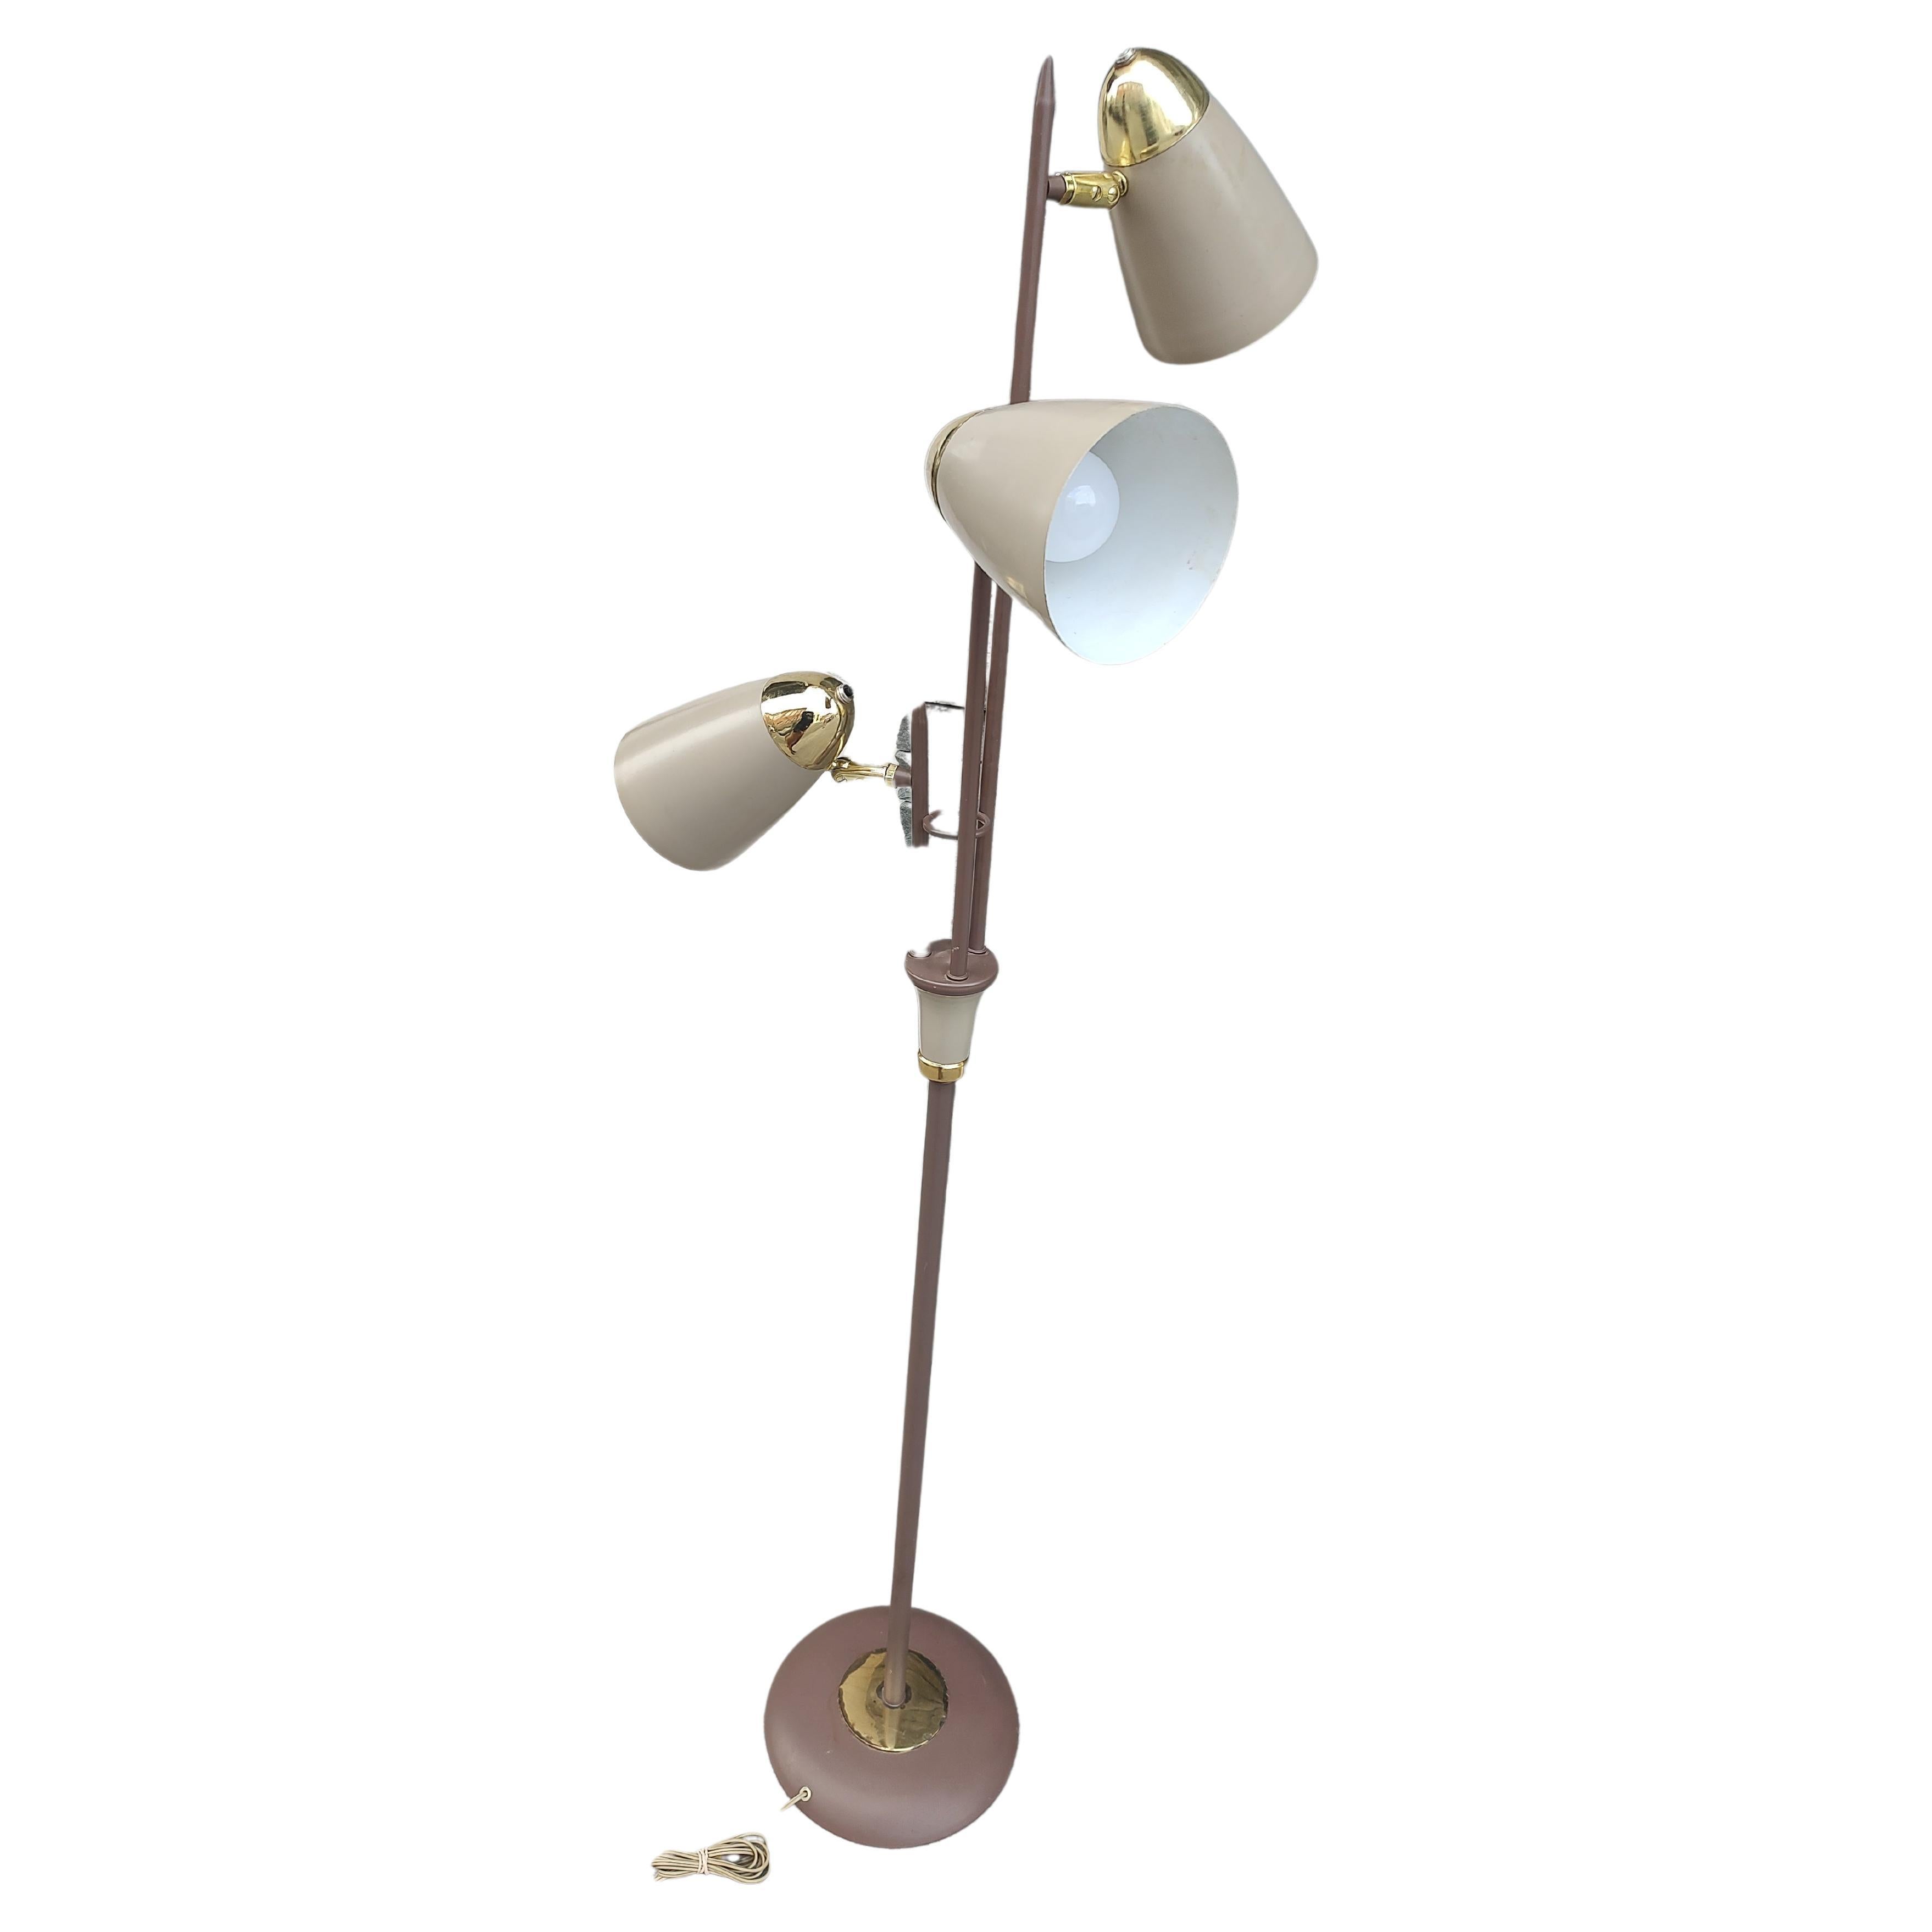 Fabuleux design de Gerald Thurston et interprétation du lampadaire triennal dans des tons bruns avec des accents de laiton. Complètement maniable pour accentuer toute position d'éclairage souhaitée. En excellent état vintage avec une usure minimale.